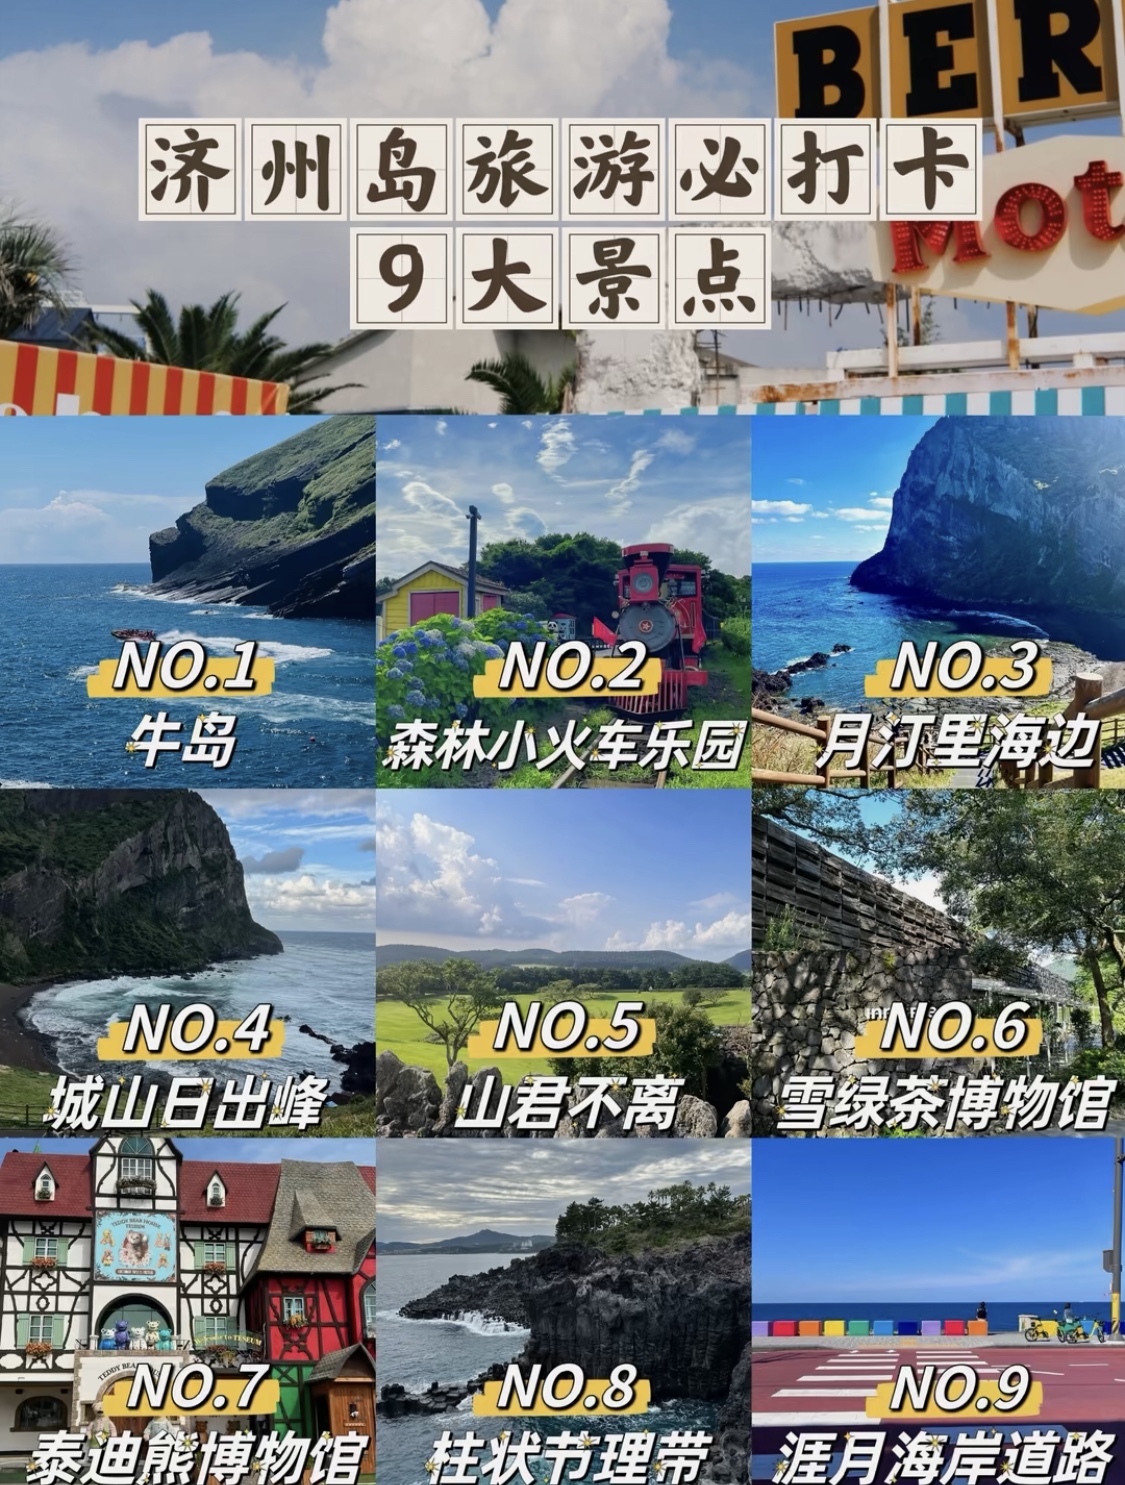 #济州岛樱花路鼻祖~  👍最推荐： 济州岛今年最值得打卡的地方❗️❗️|||！在济州岛，你将探索自然